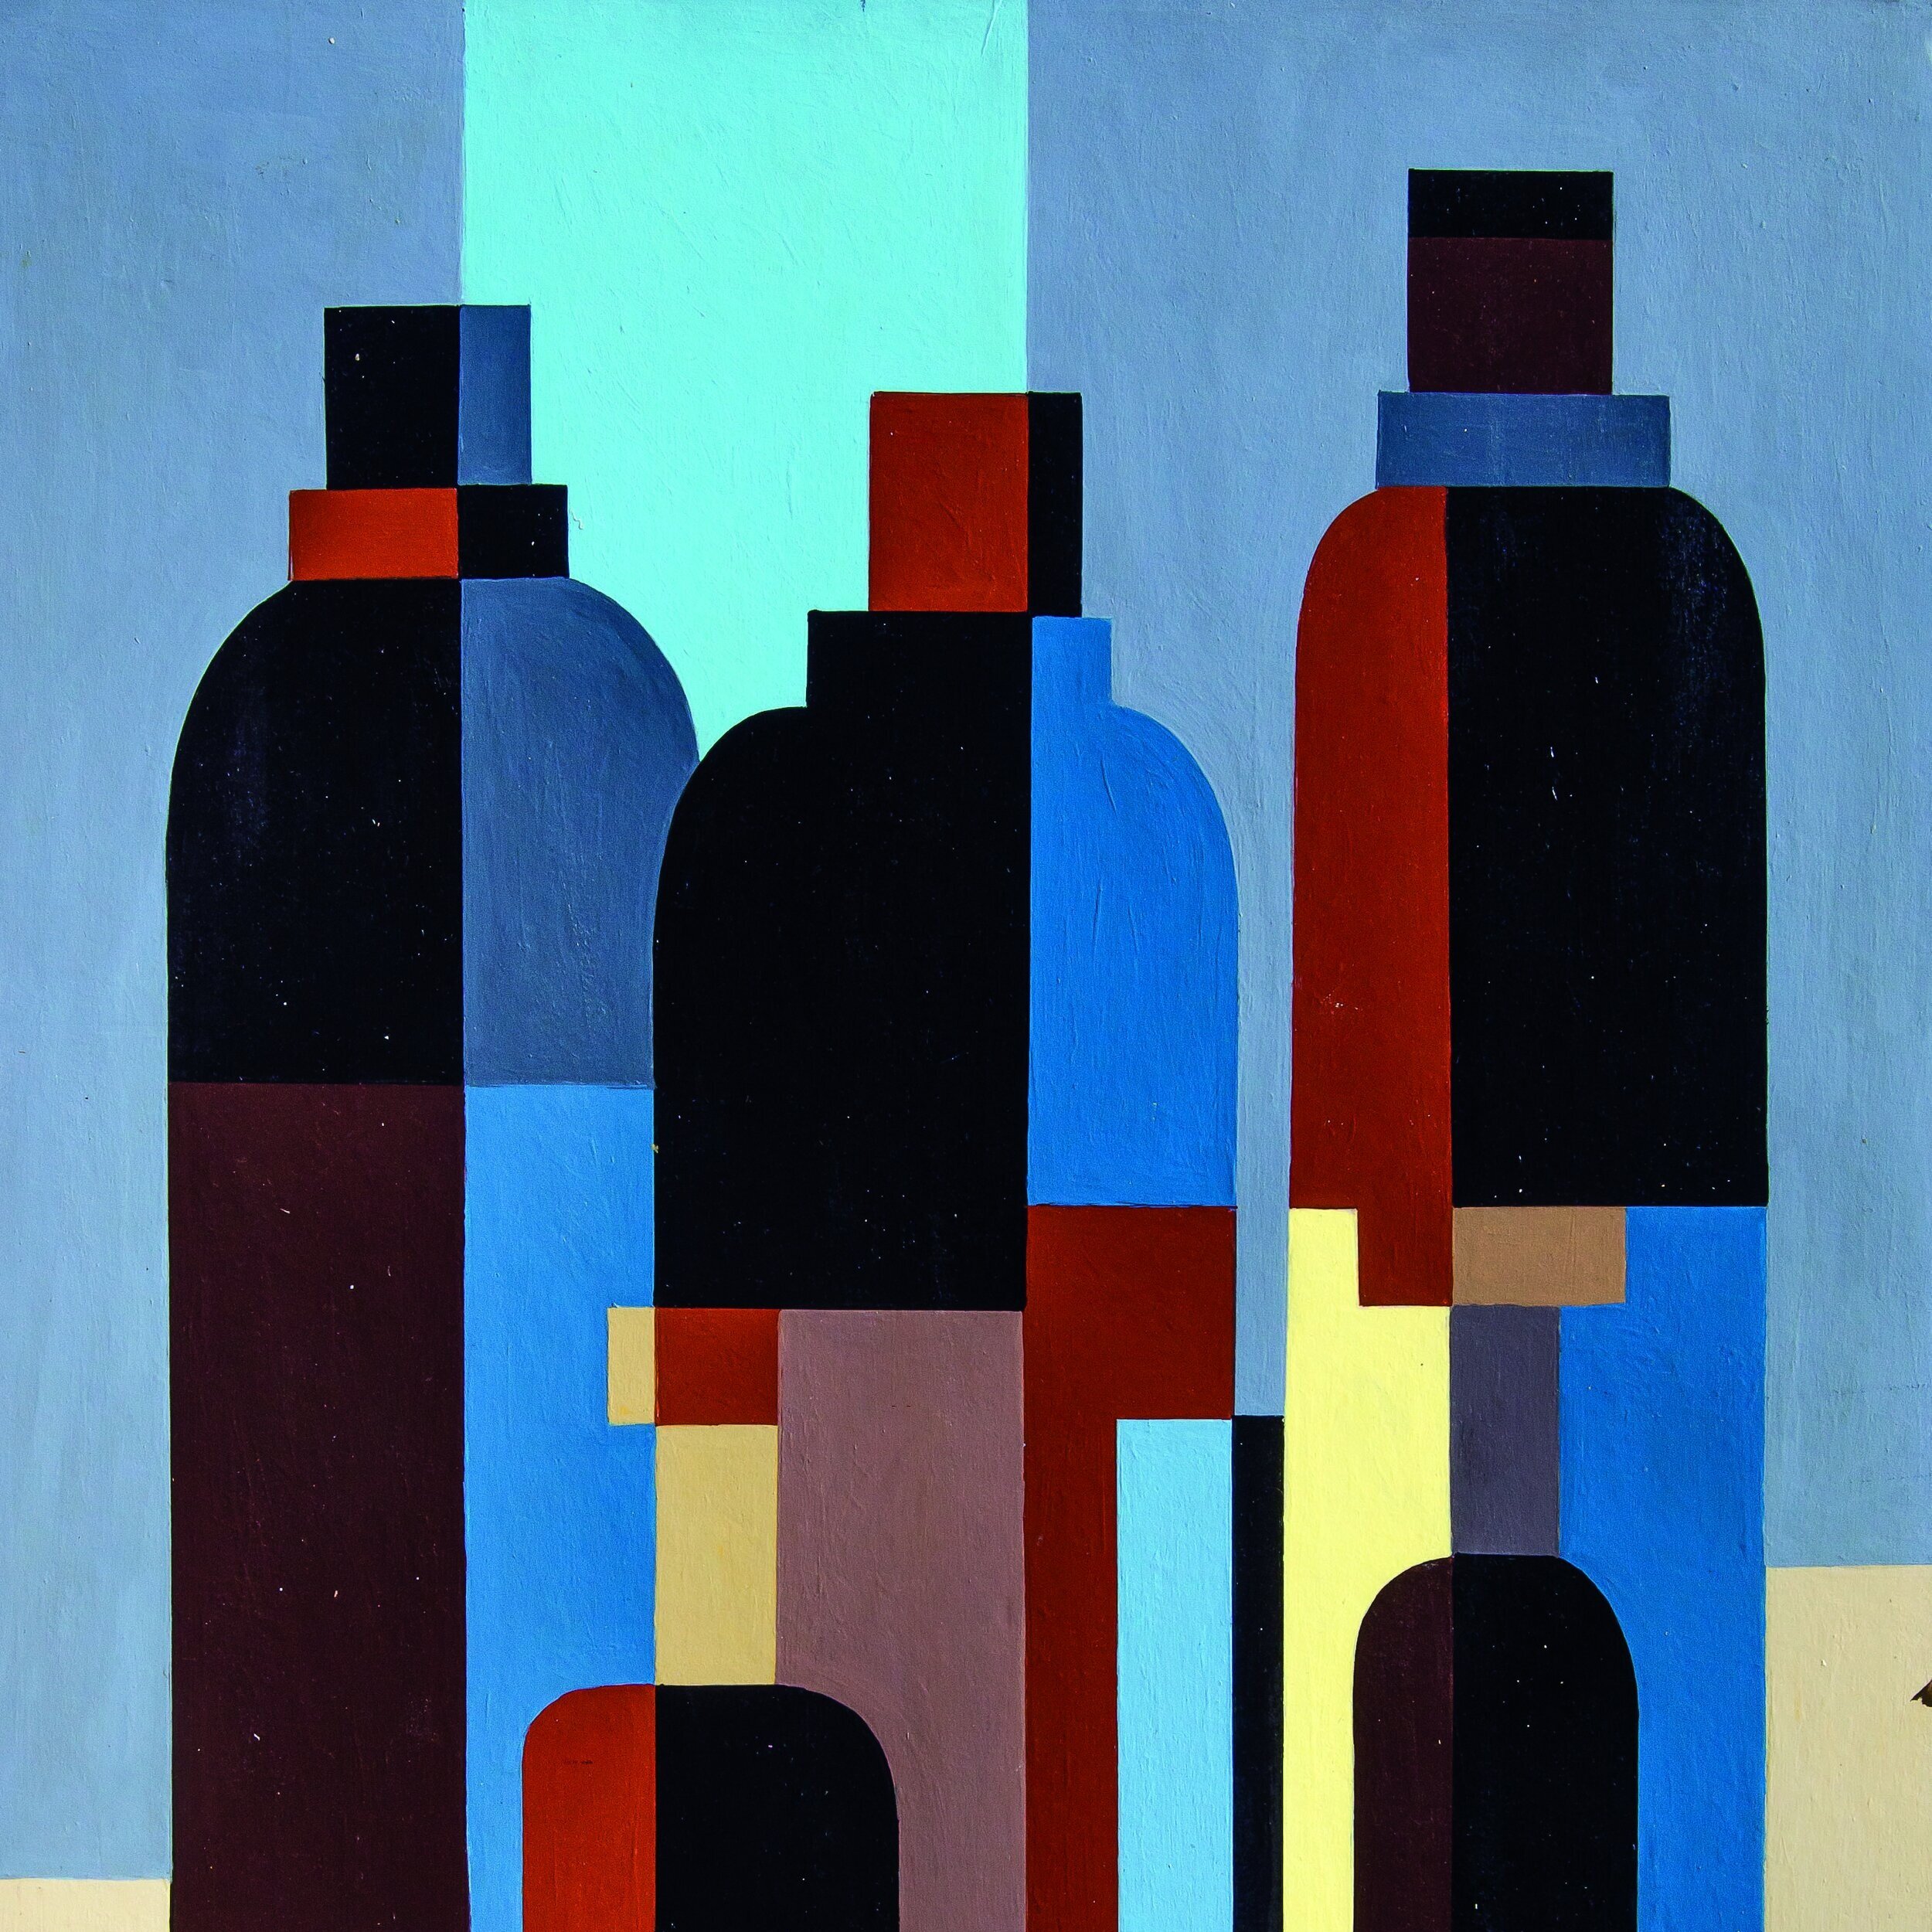   José Pedro Costigliolo  Abstracción con botellas ,  1948   Acrílico sobre cartón  101 x 66 cm  Galería SUR 